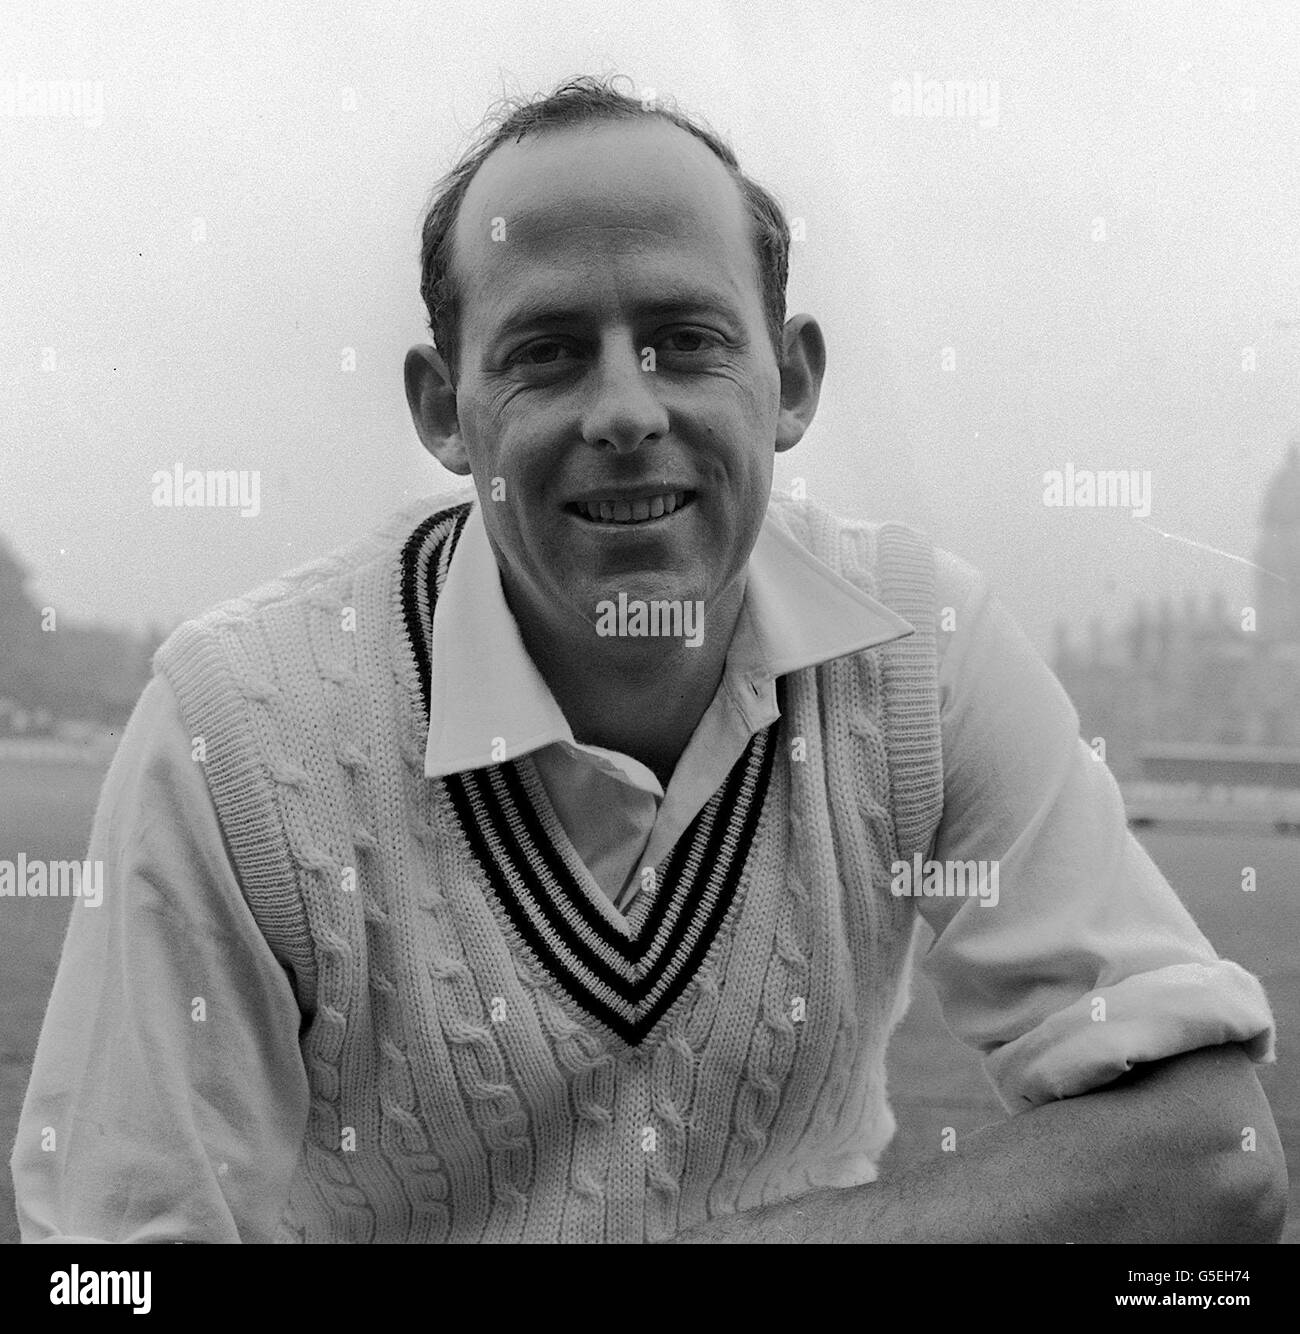 Brian Hastings, membre de l'équipe de cricket de la Nouvelle-Zélande, forte de 16 personnes, actuellement en tournée au Royaume-Uni en 1969. Banque D'Images